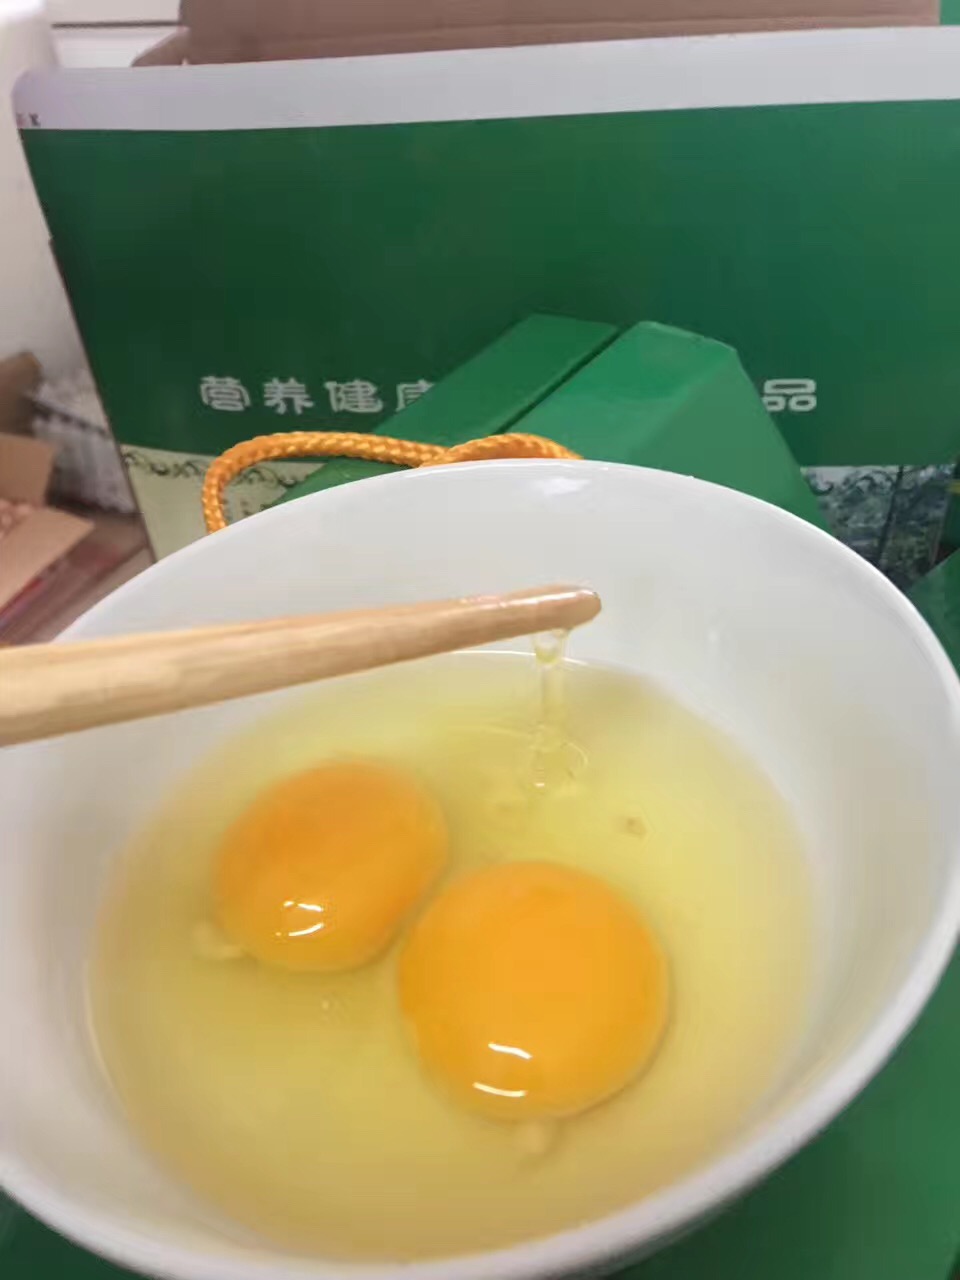 绿地壳鸡蛋